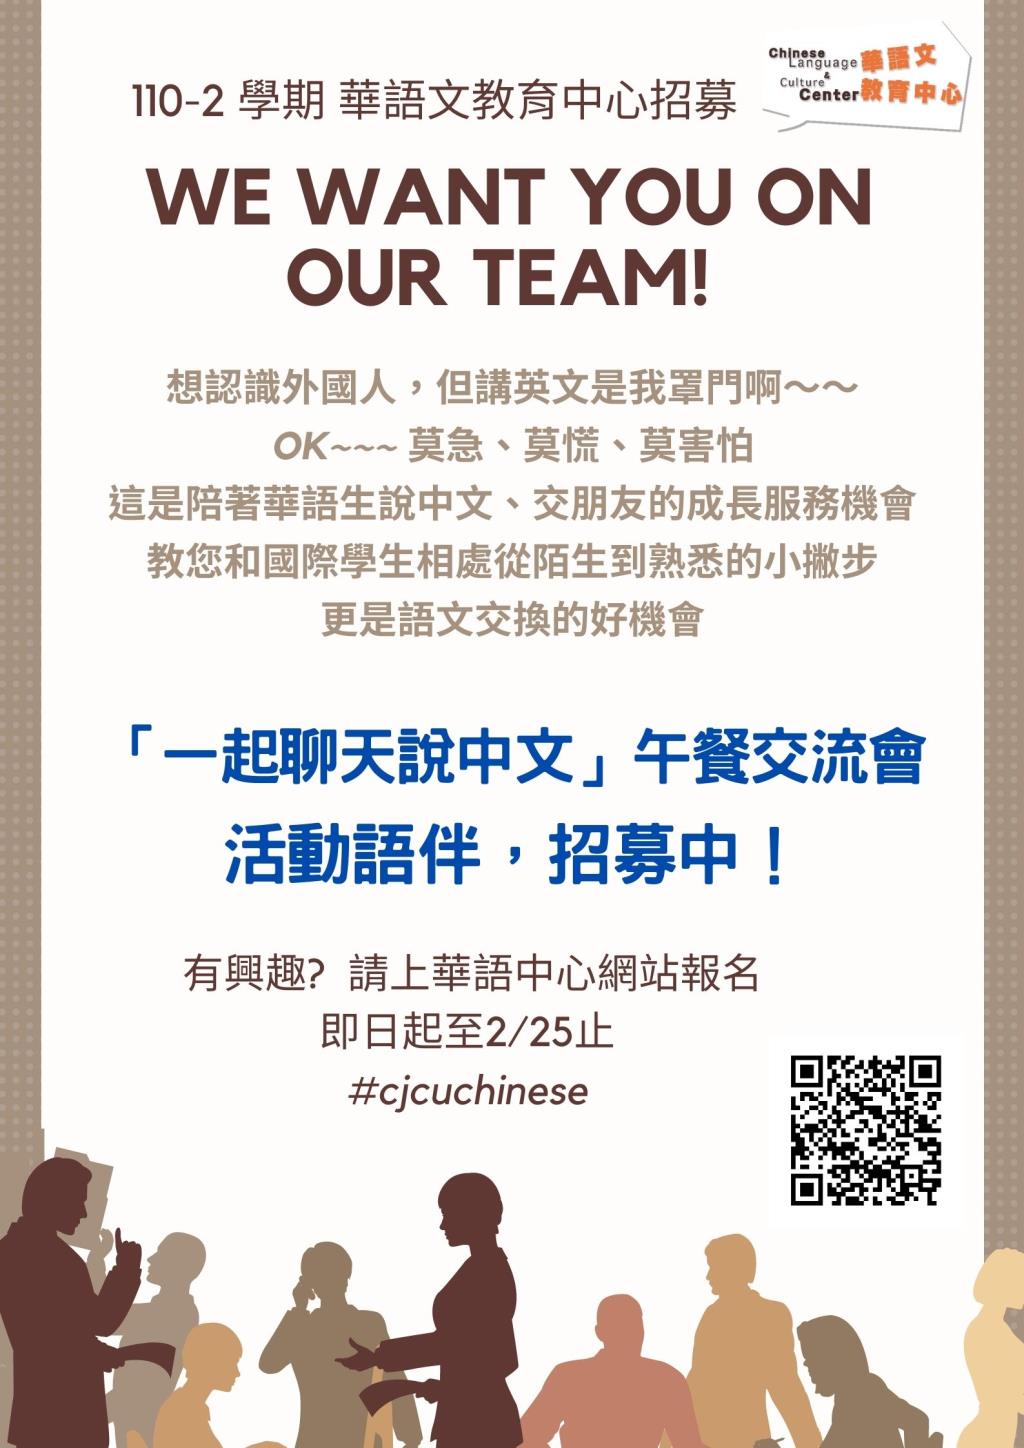 【招募】華語活動語伴招募! 一起和華語生聊天